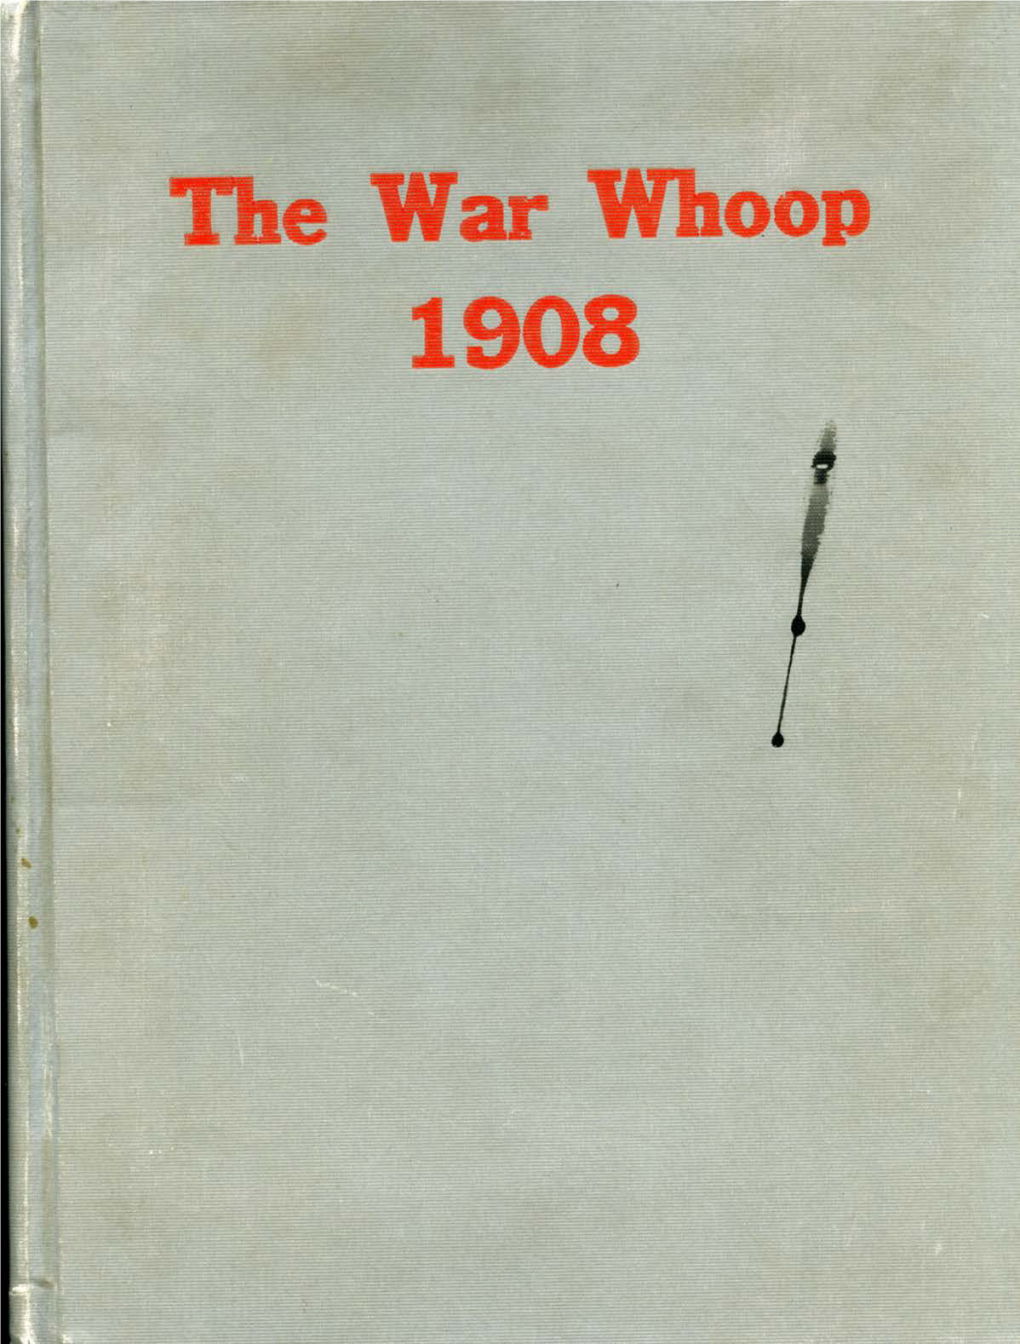 The War Whoop, 1908